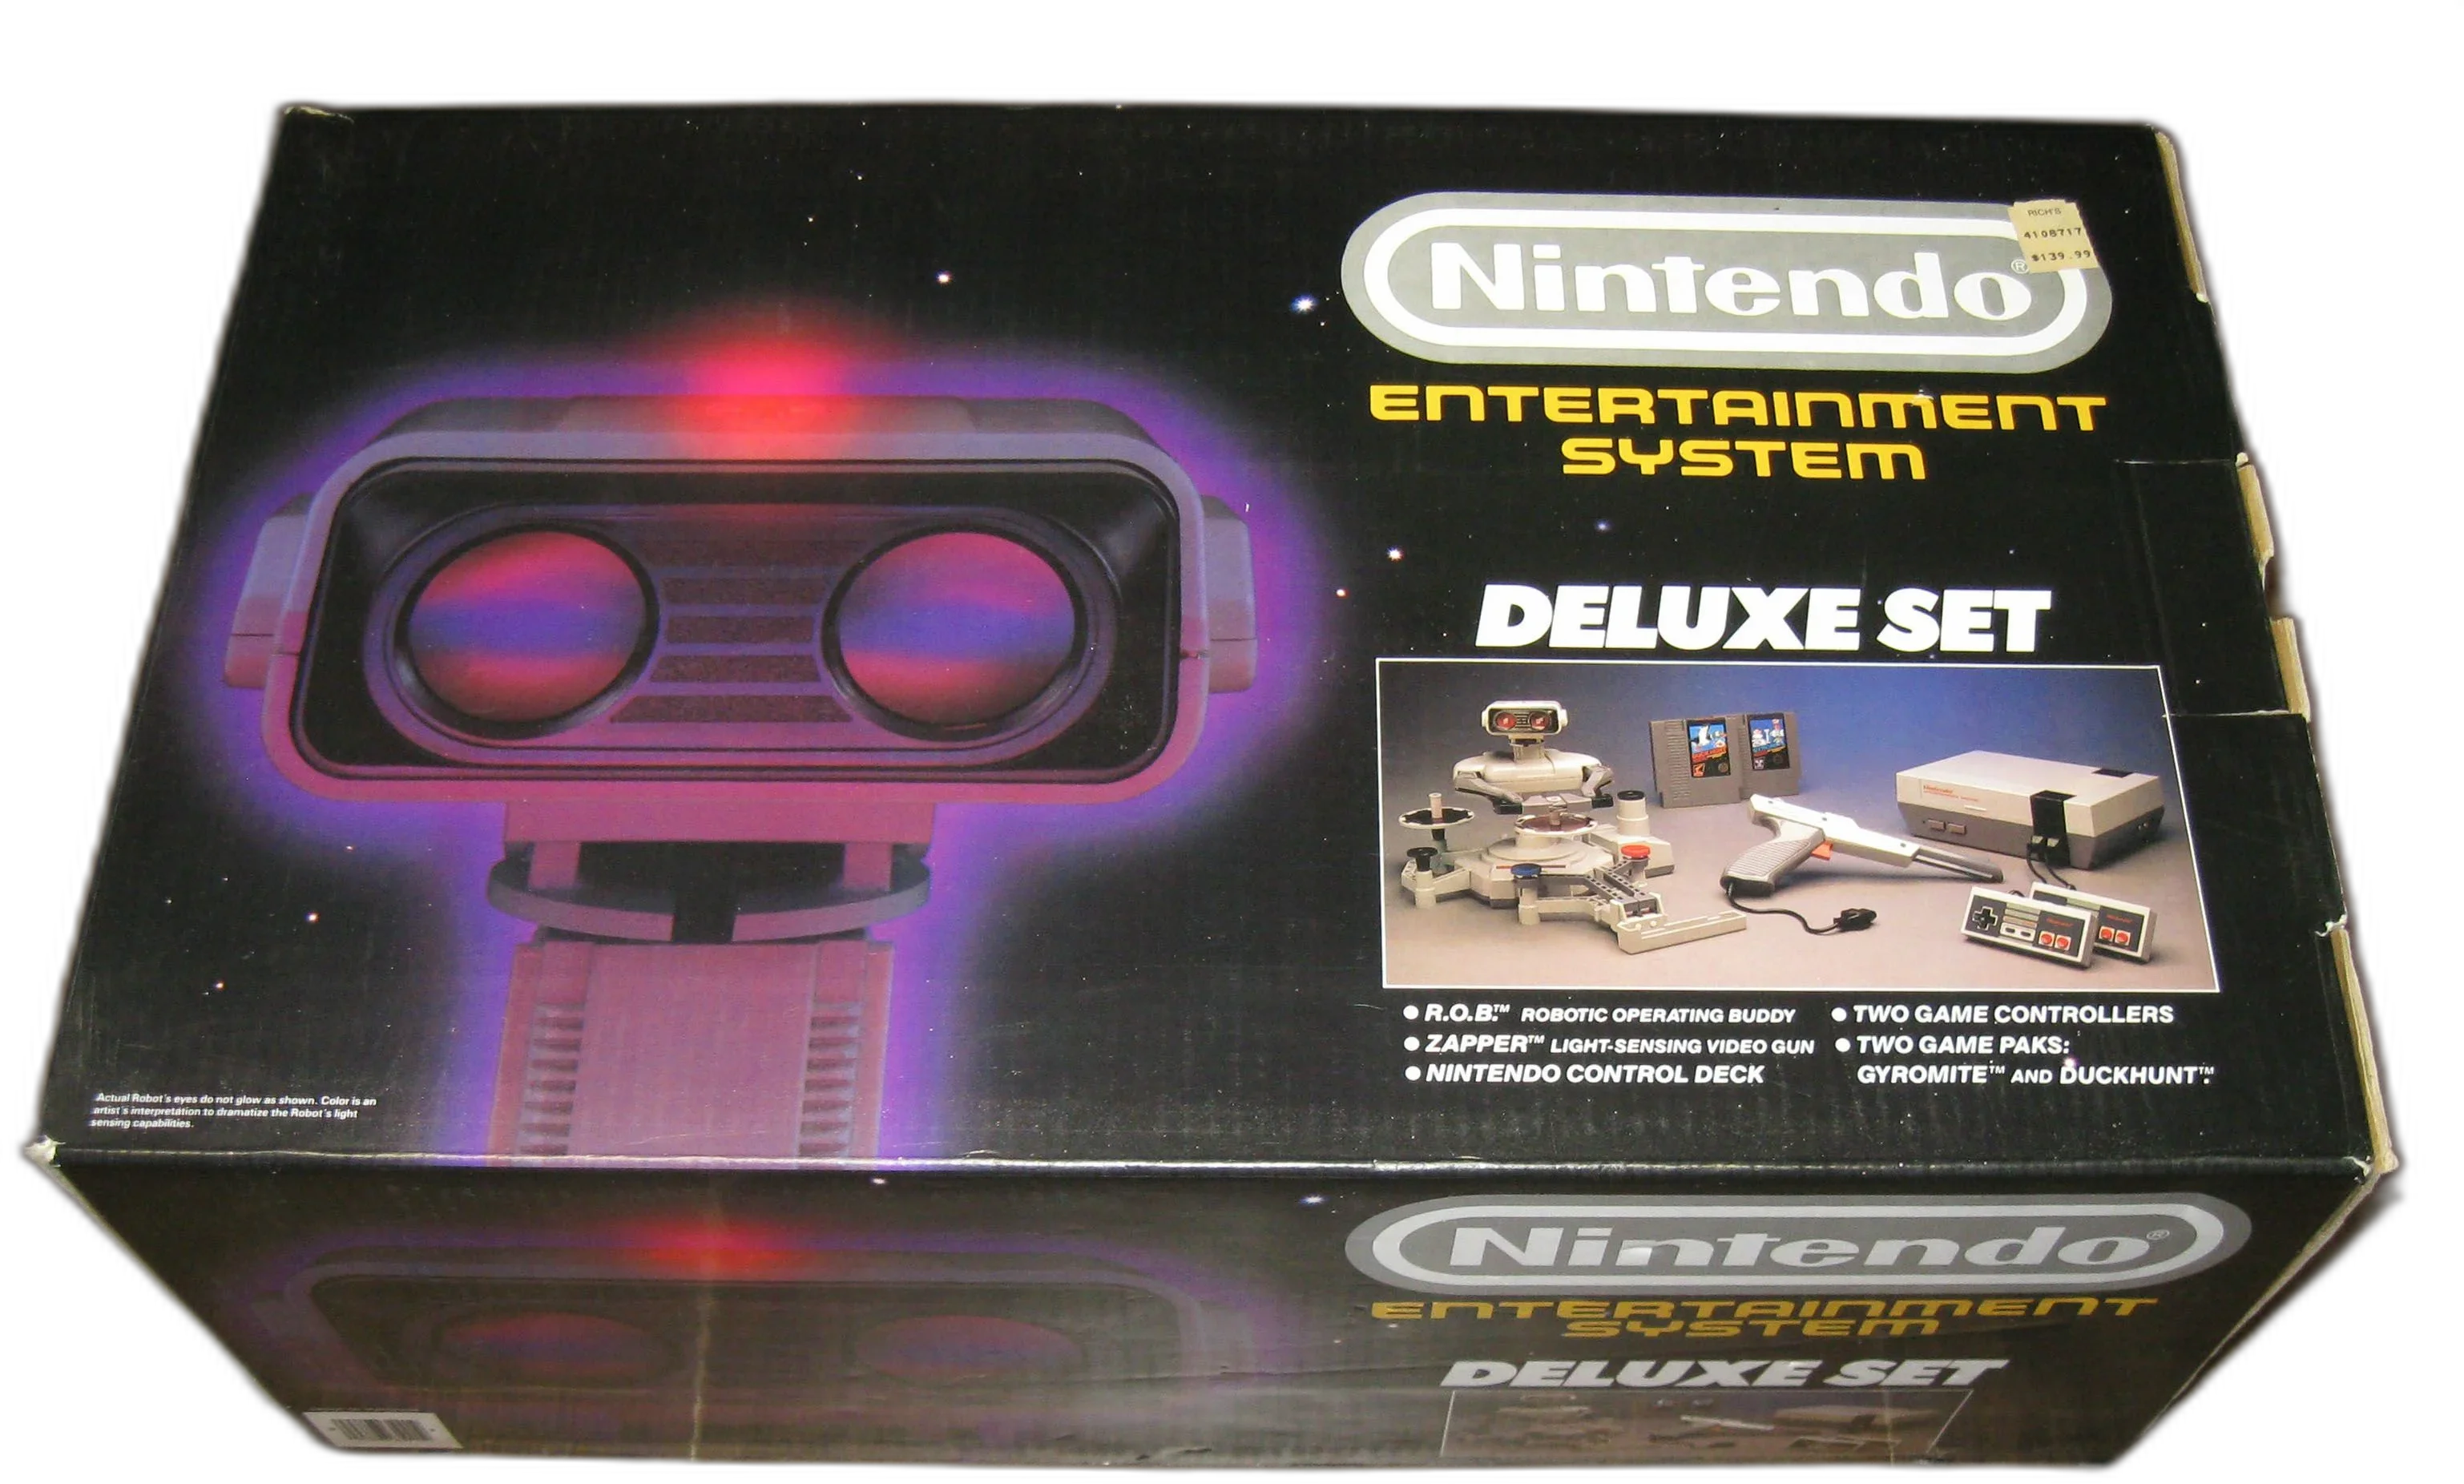  NES Deluxe Set